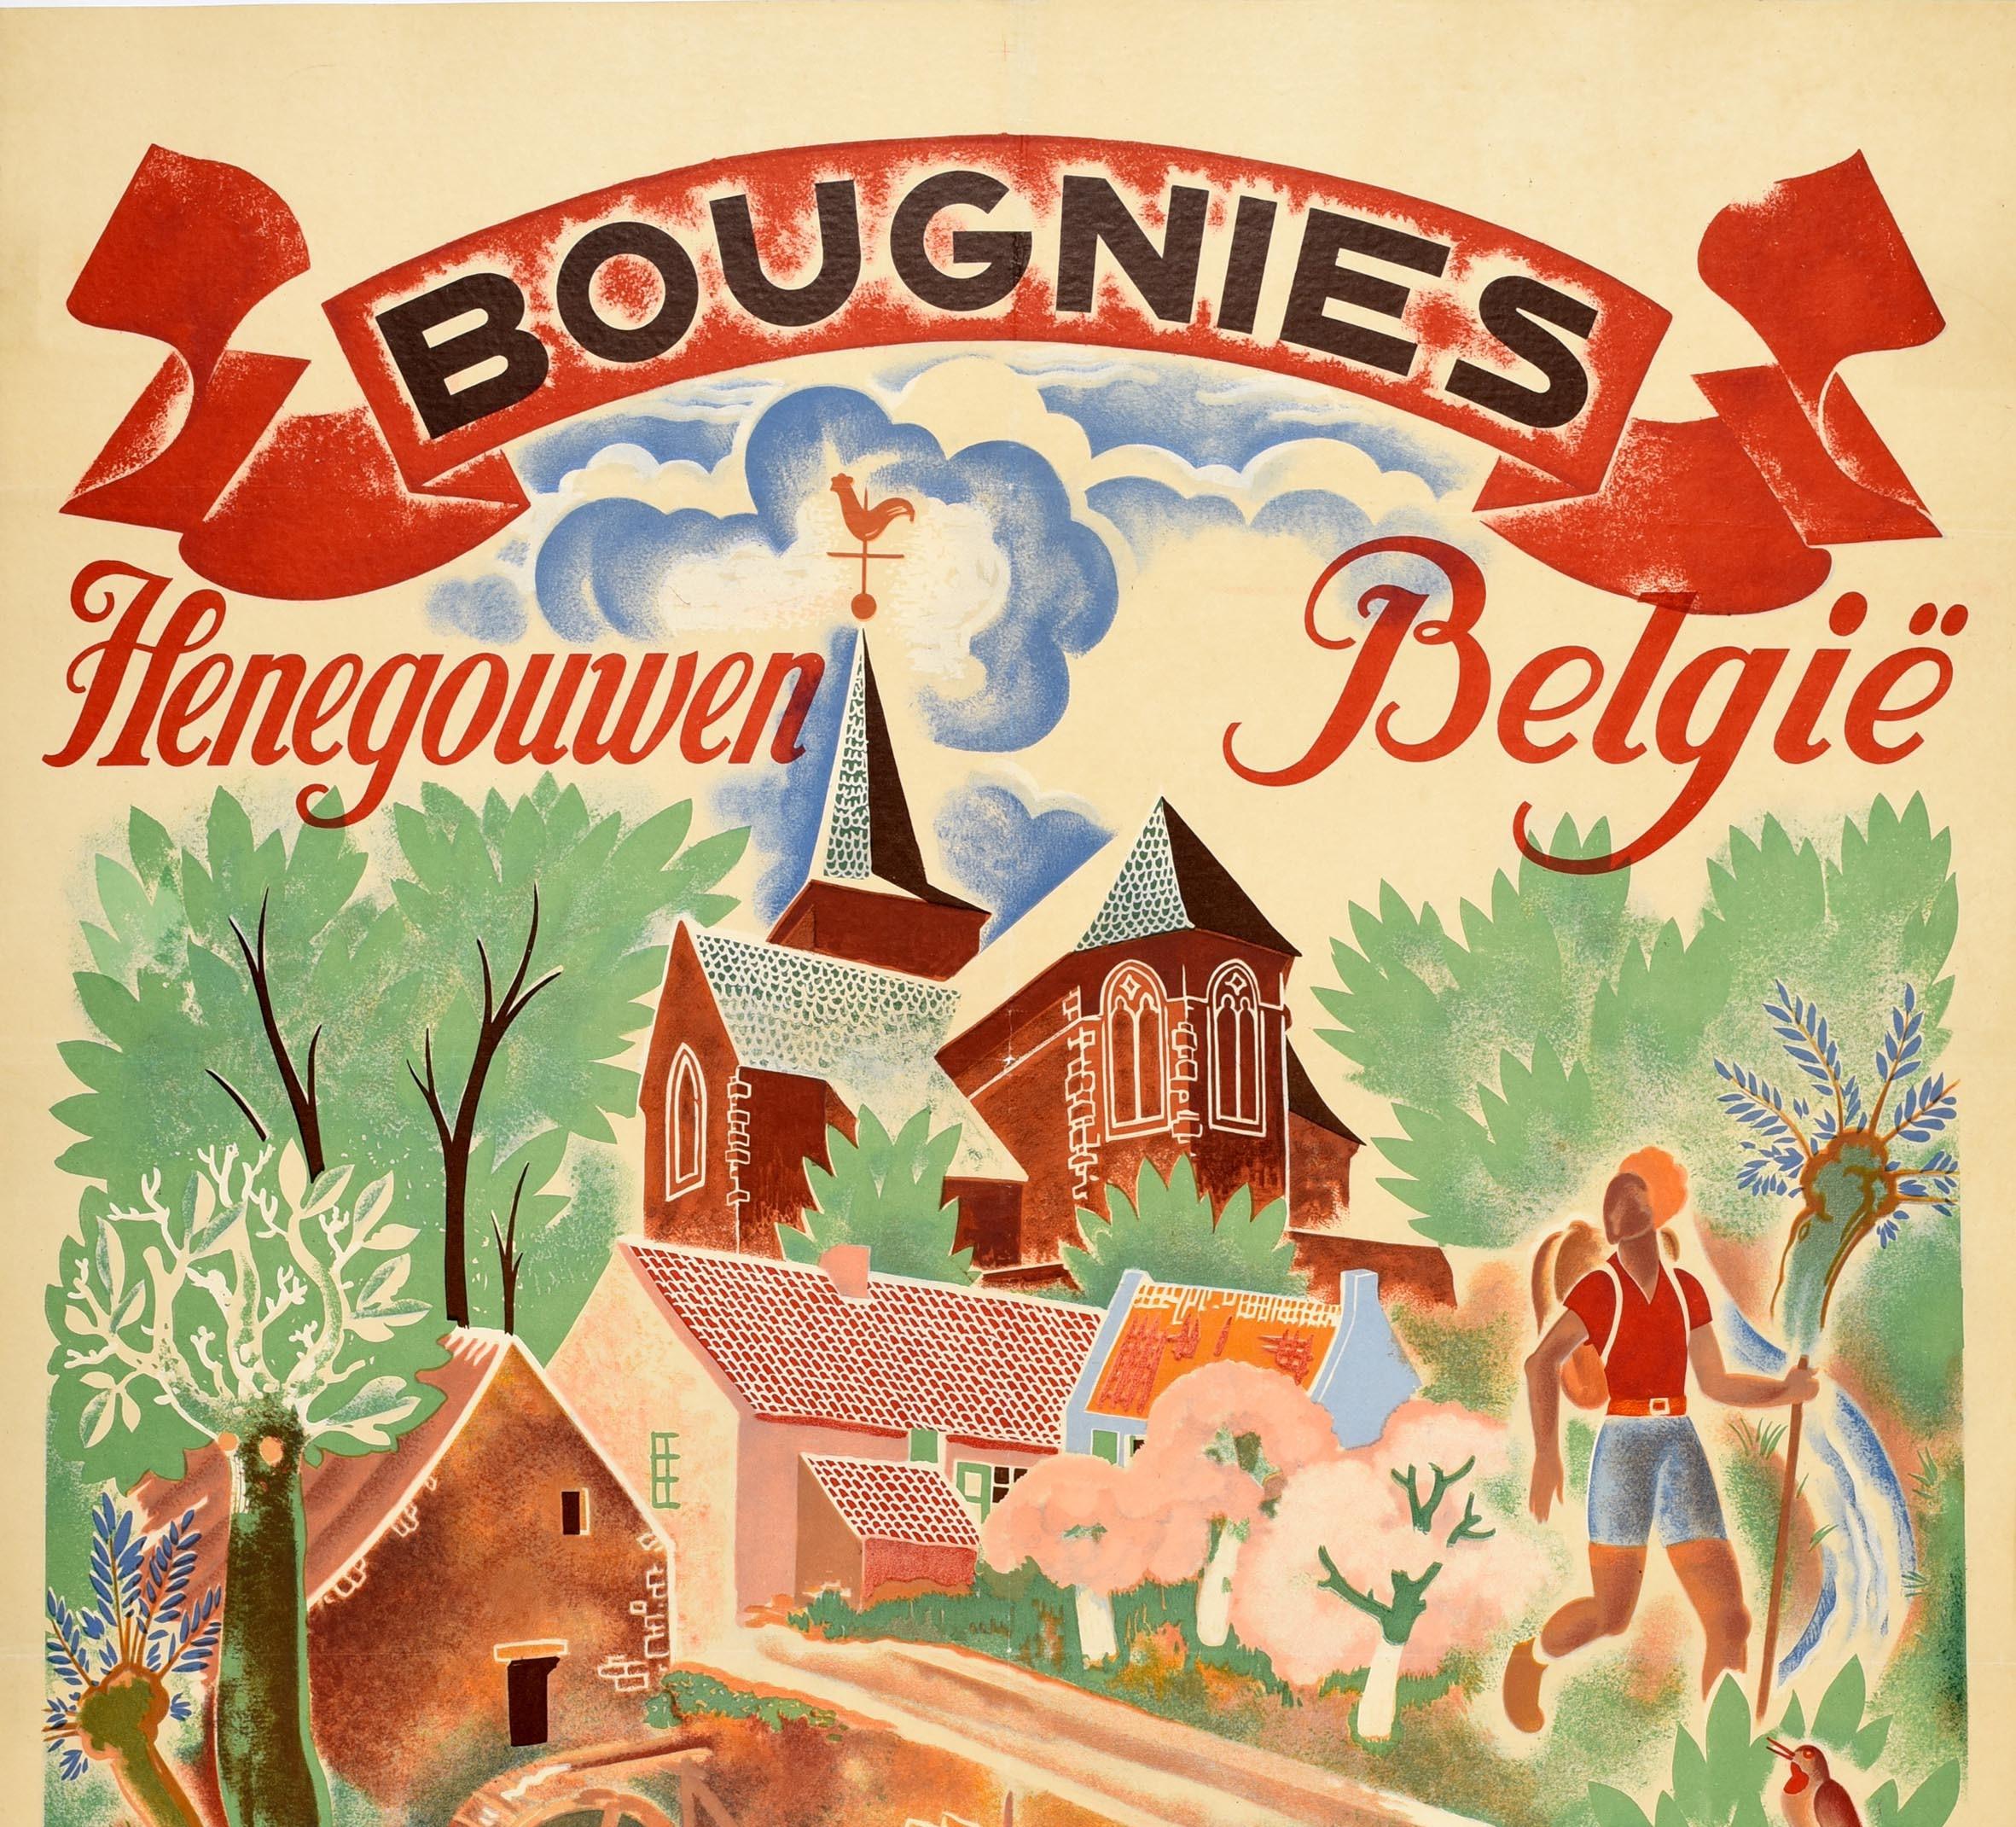 Affiche de voyage vintage originale pour Bougnies Henegouwen Belgie dans la région sud d'Henegouwen en Belgique avec une illustration colorée de style Nervia représentant un homme pêchant et une dame prenant un bain de soleil et lisant paisiblement